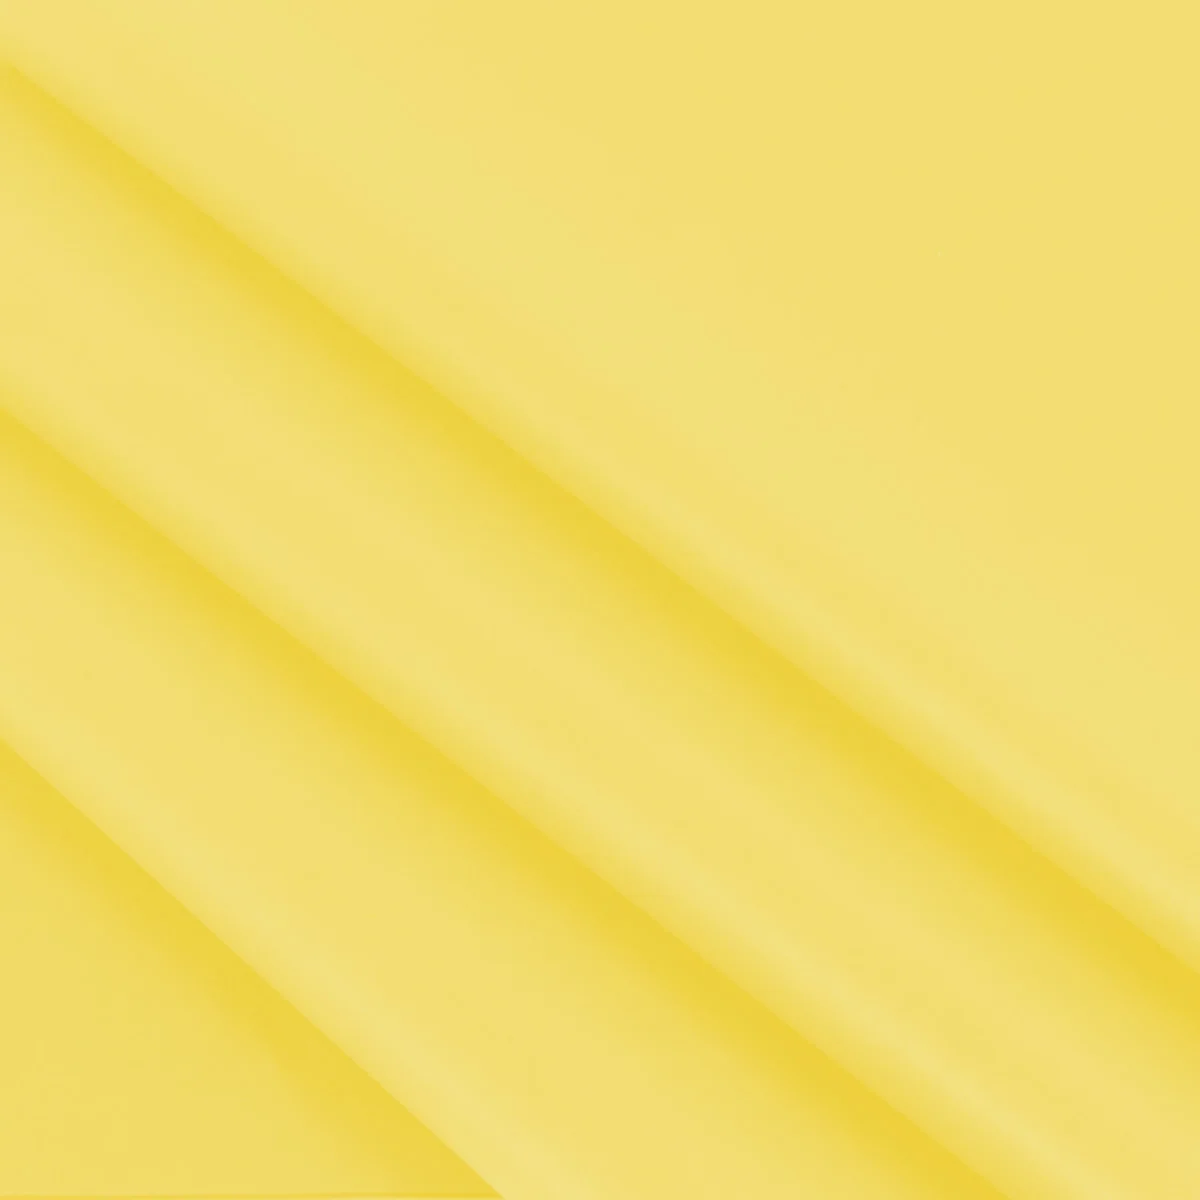 Vloeipapier geel 25 x 35 cm (480 vellen)